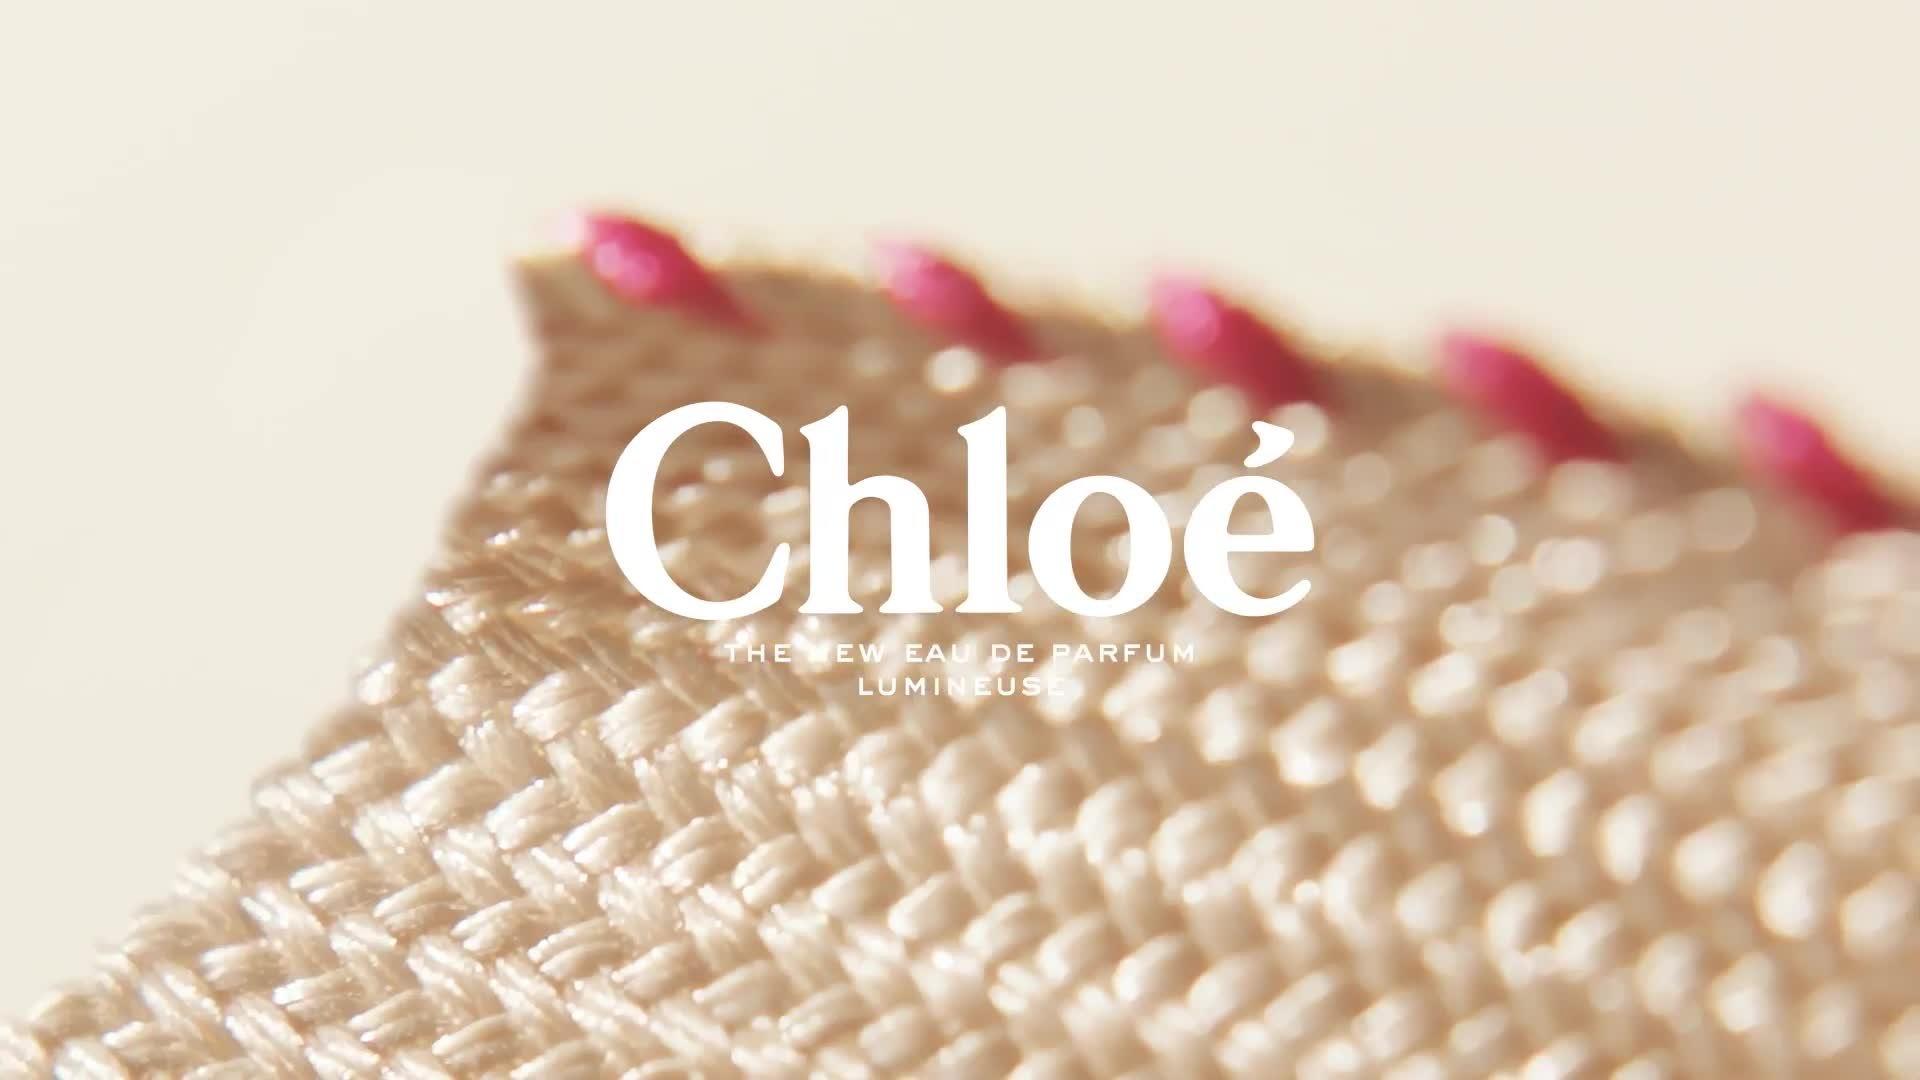 Chloe L'eau de Parfum Lumineuse - 1.6 oz